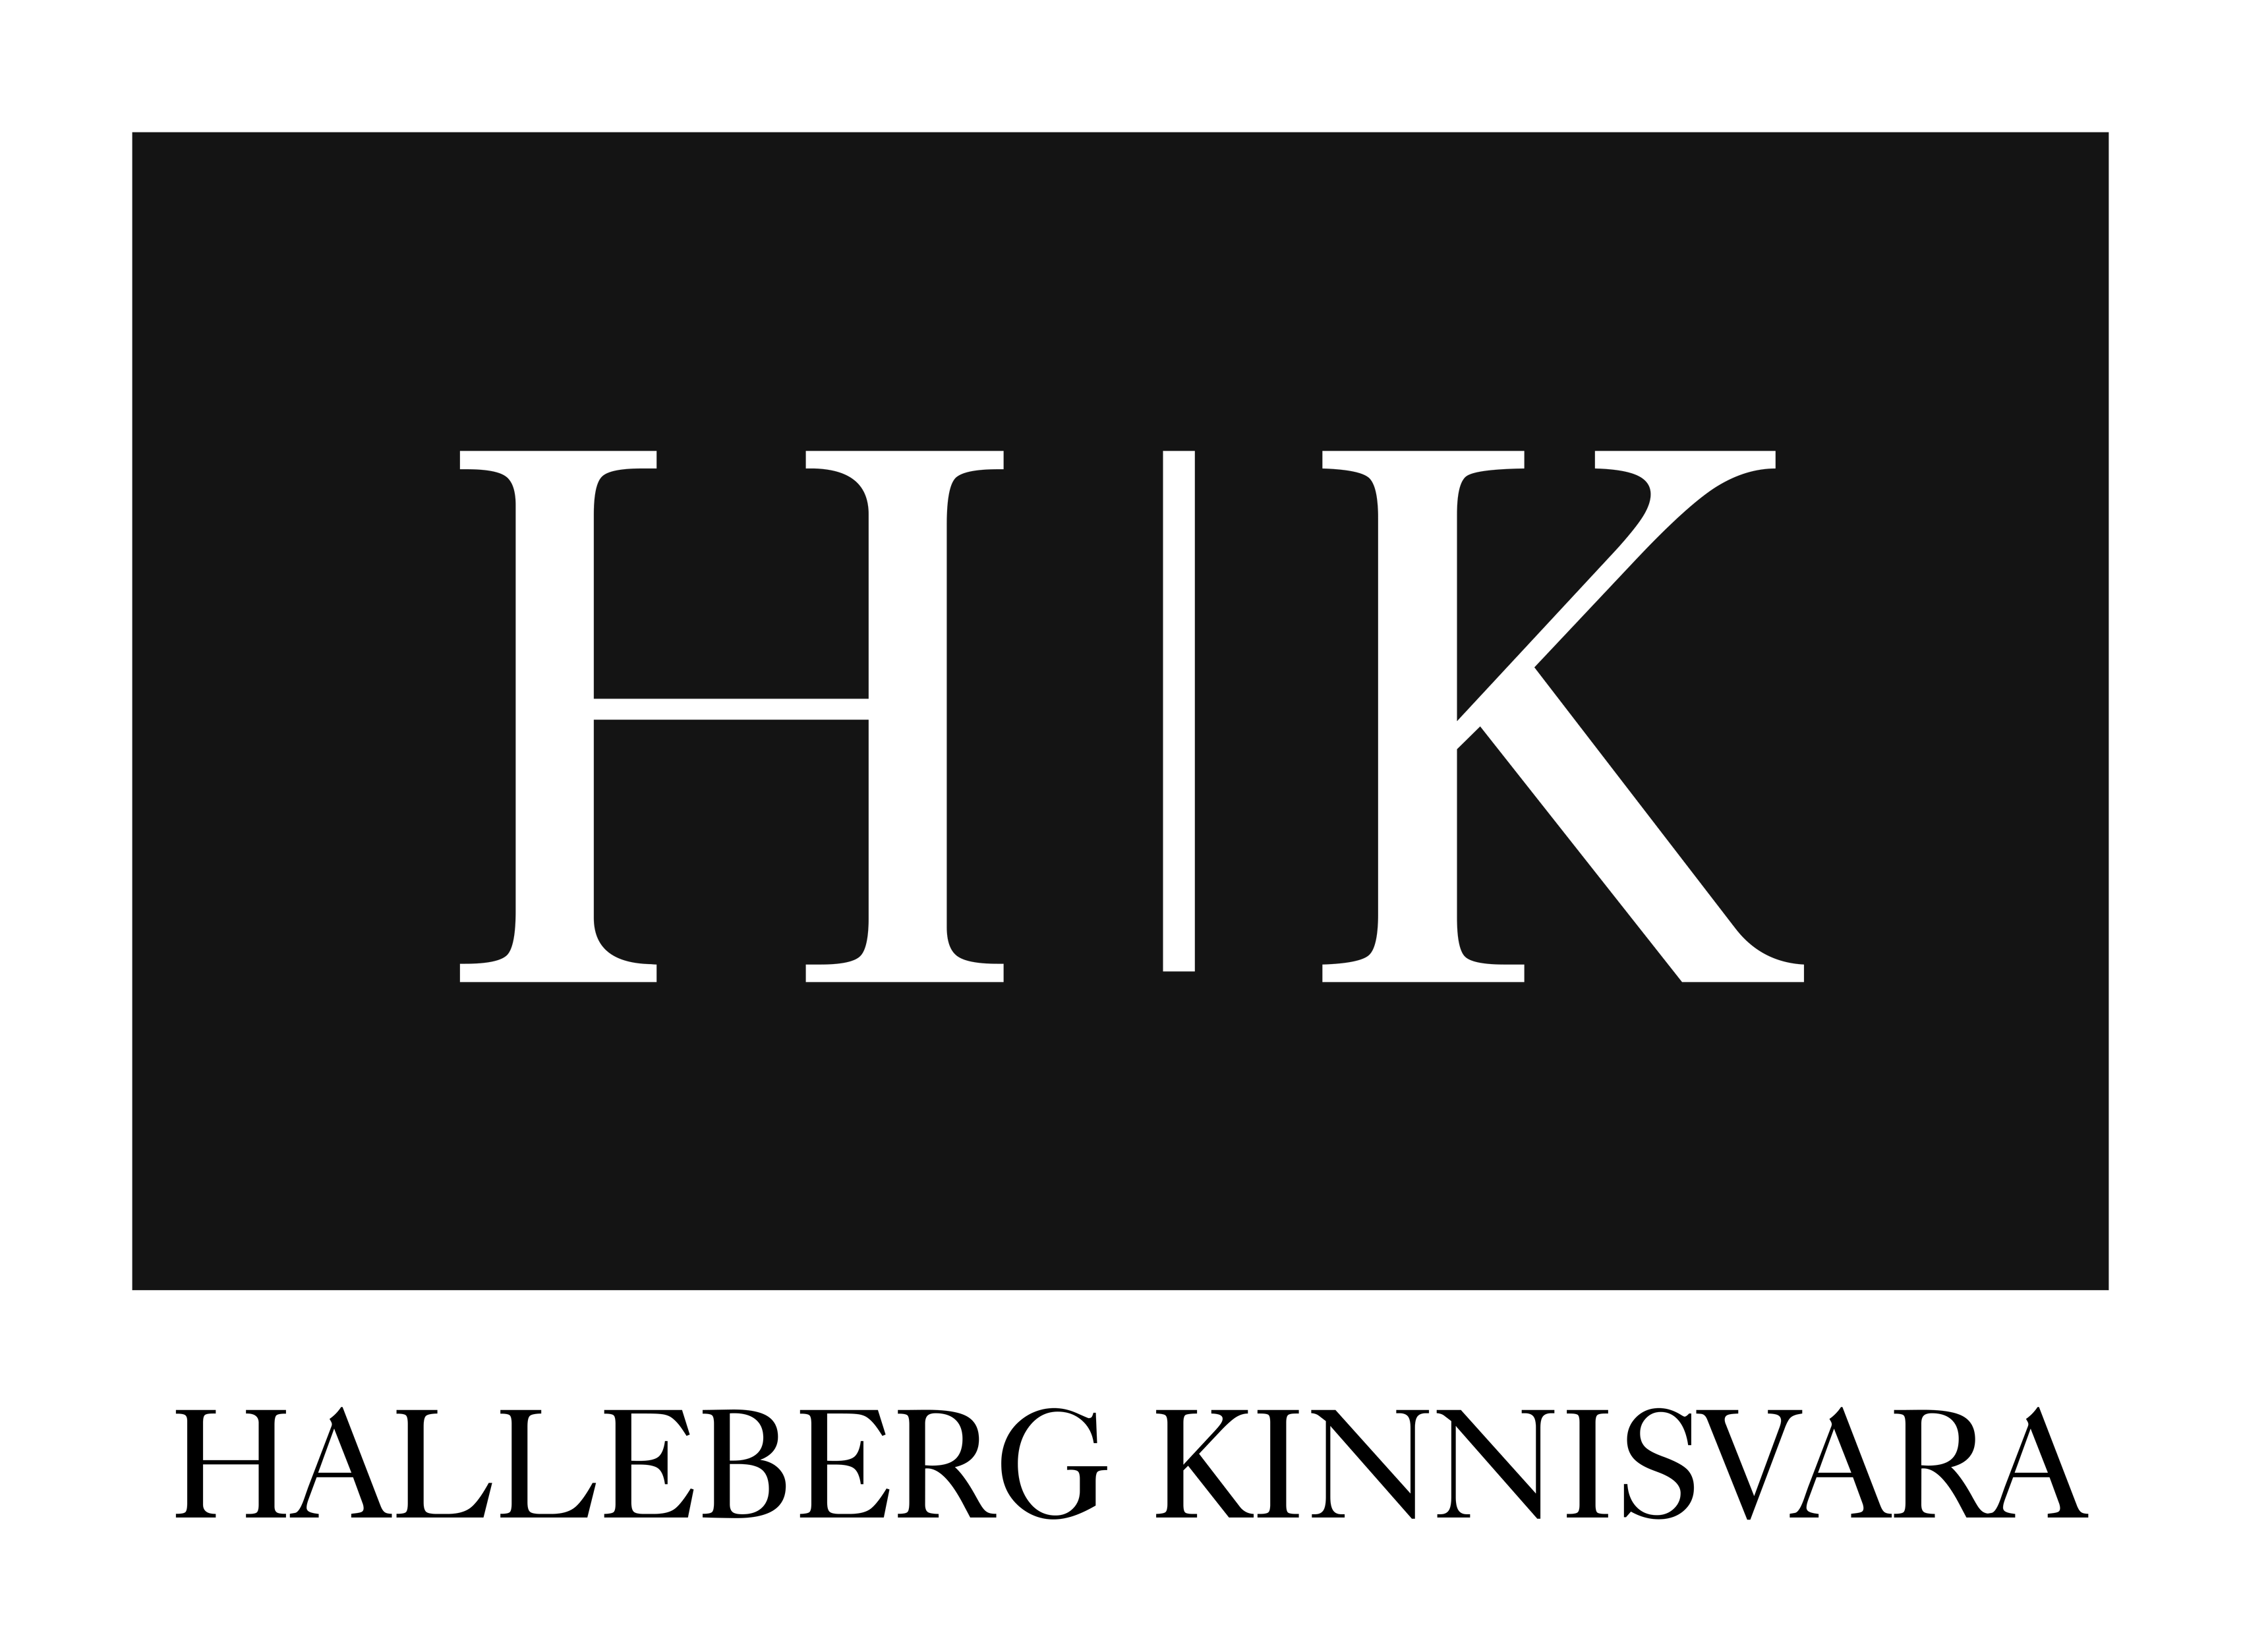 Rain Hallikmäe | Halleberg Kinnisvara